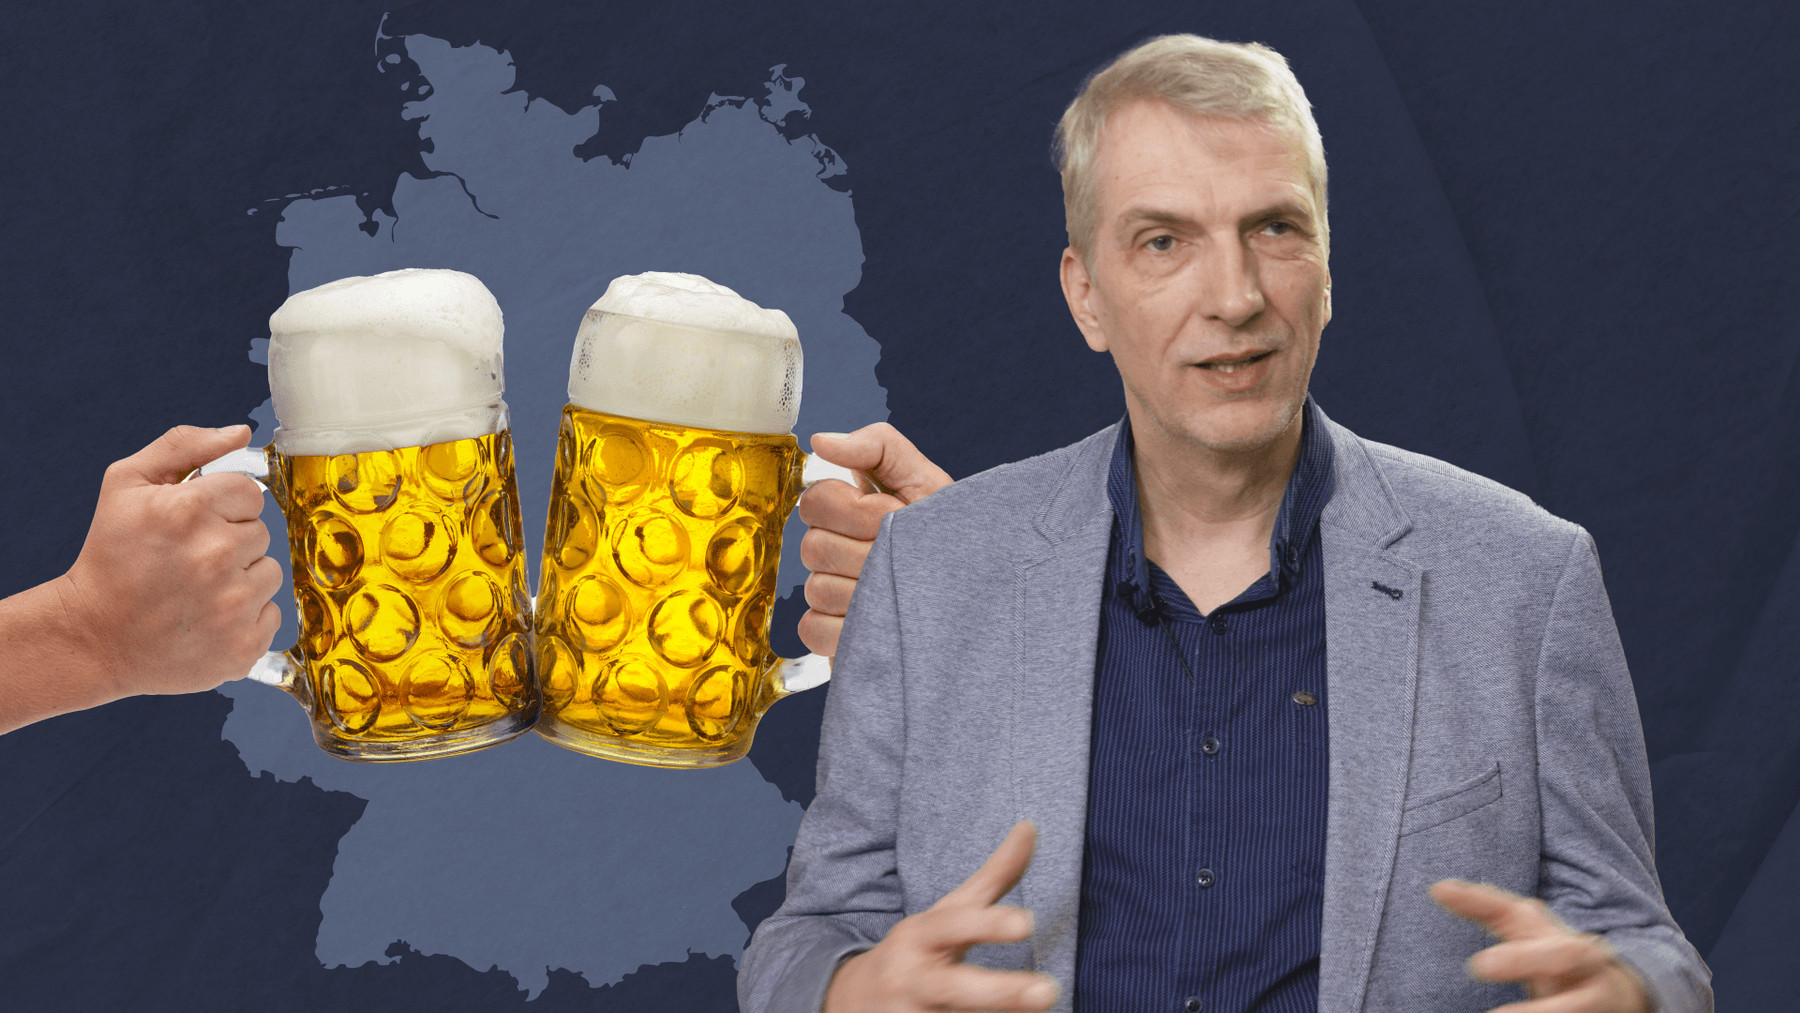 Zu Besuch beim Bierbrauer: Steht das deutsche Bier vor dem Aus?